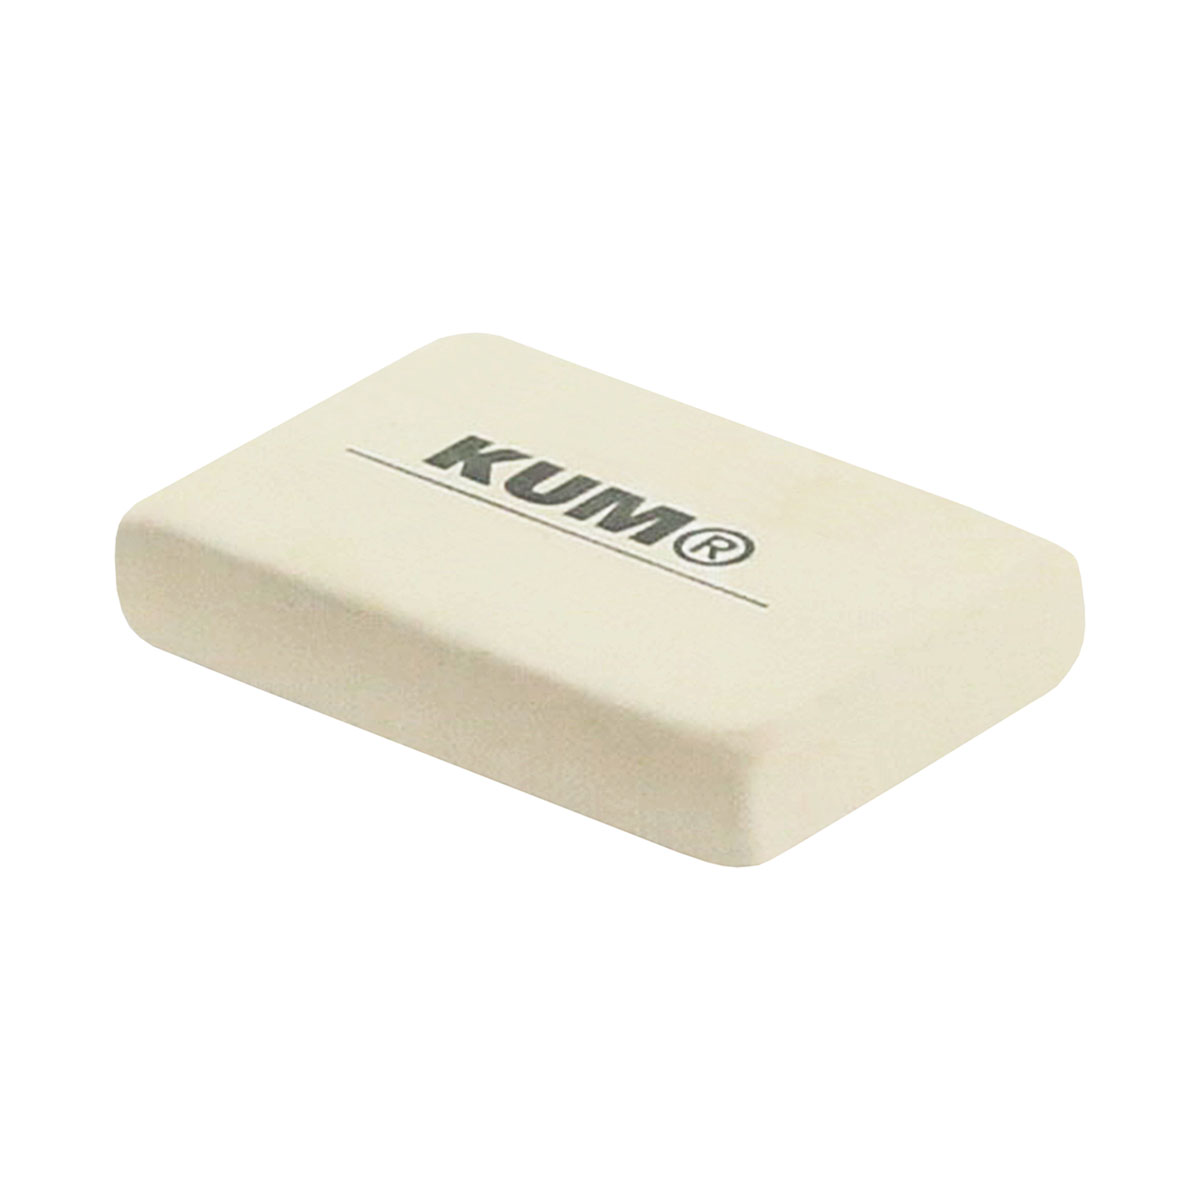 KUM EC Natural Rubber Eraser Small